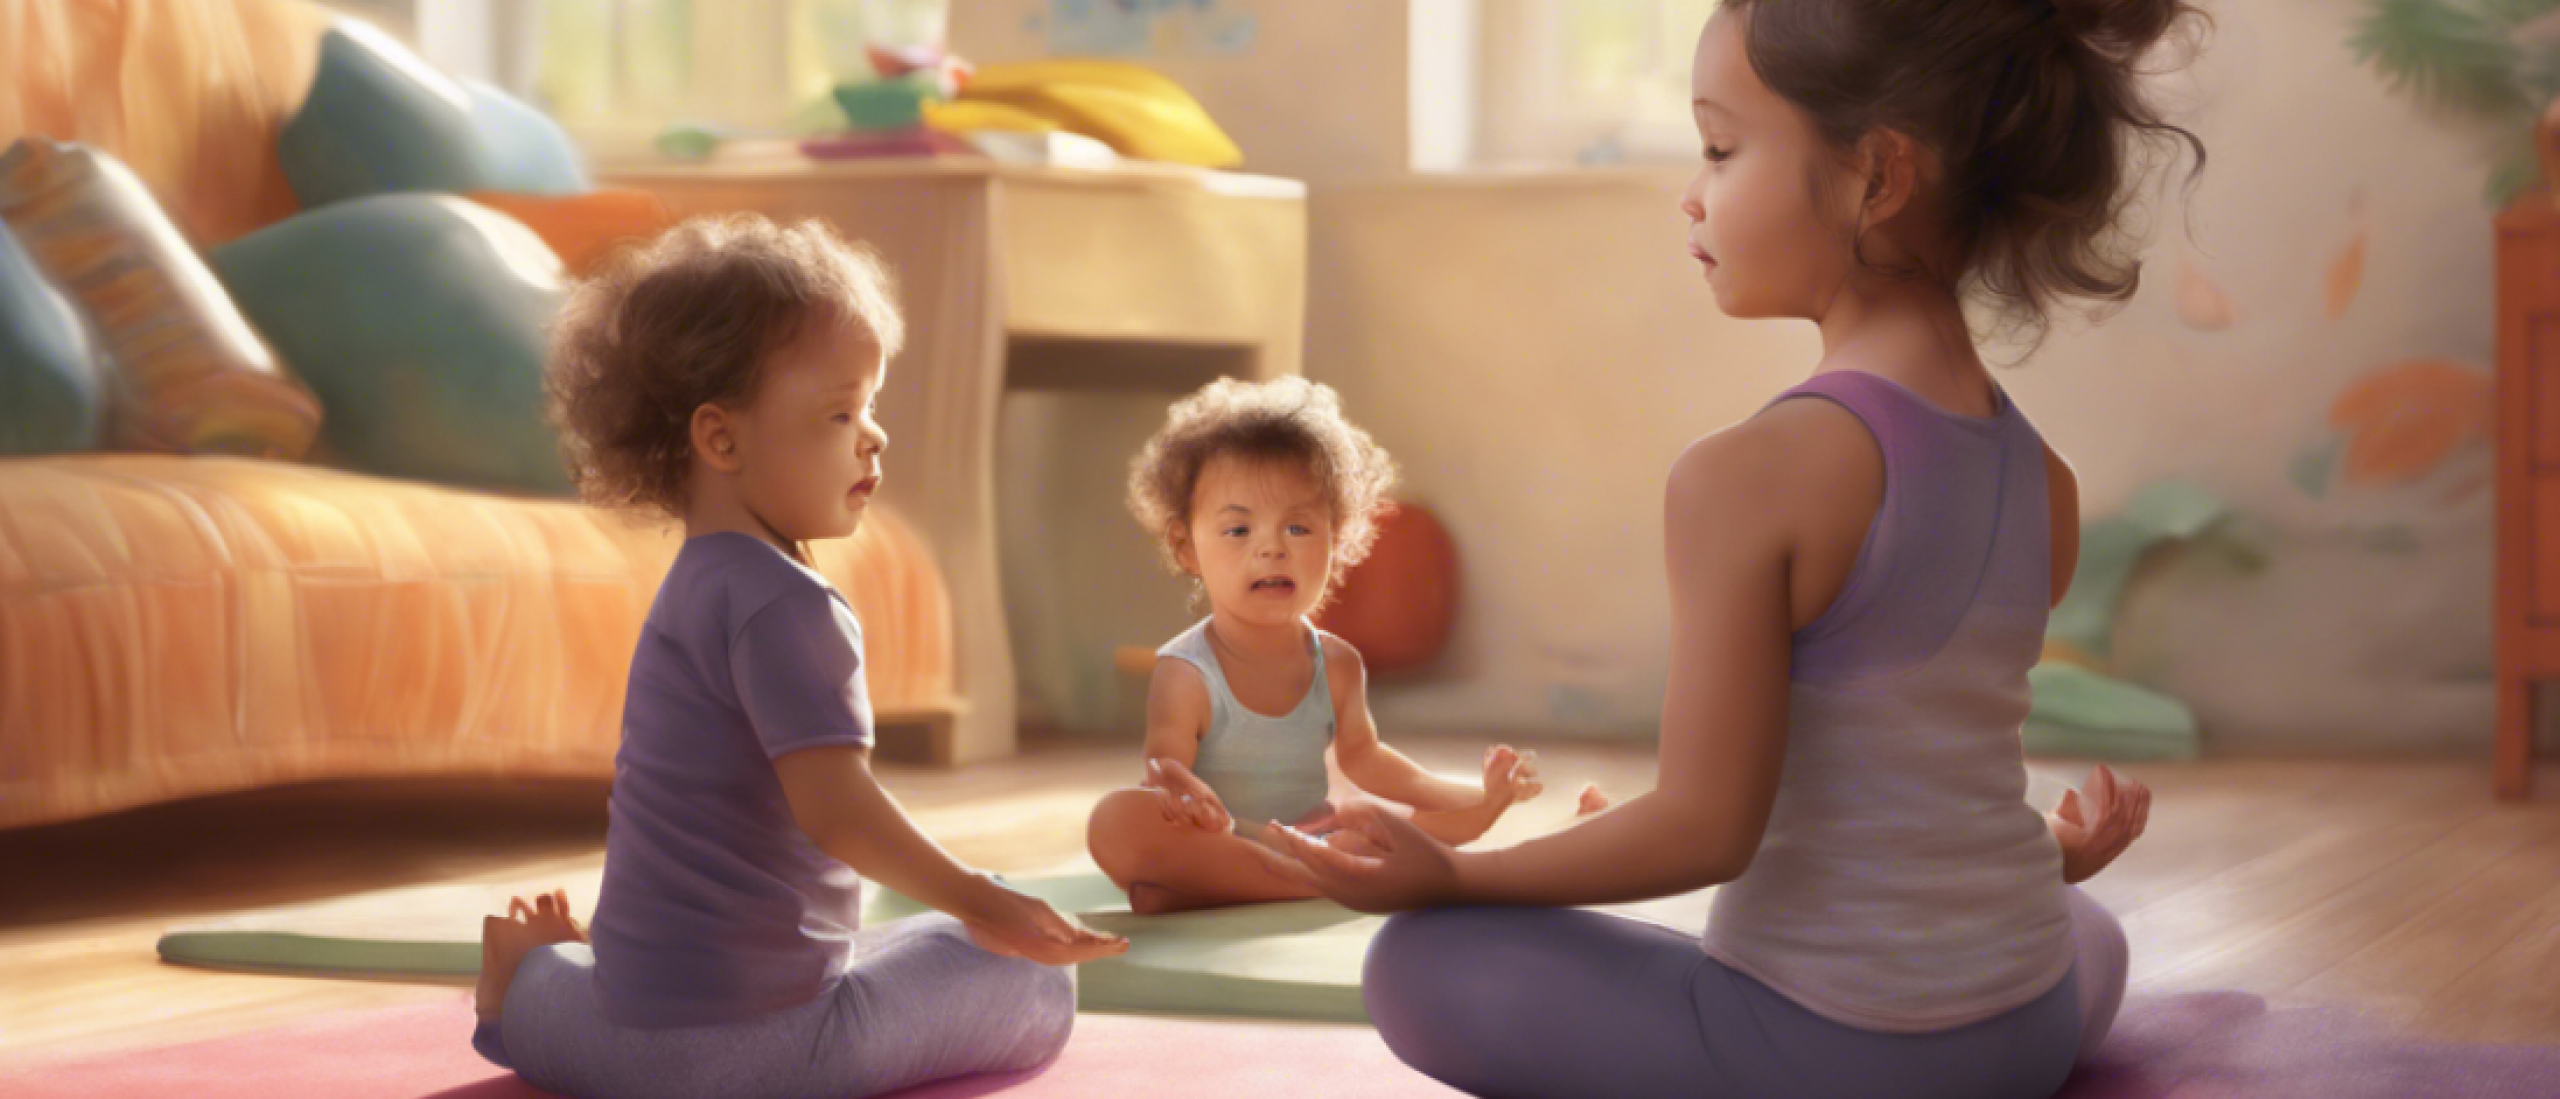 Spelen met yoga in de kinderopvang